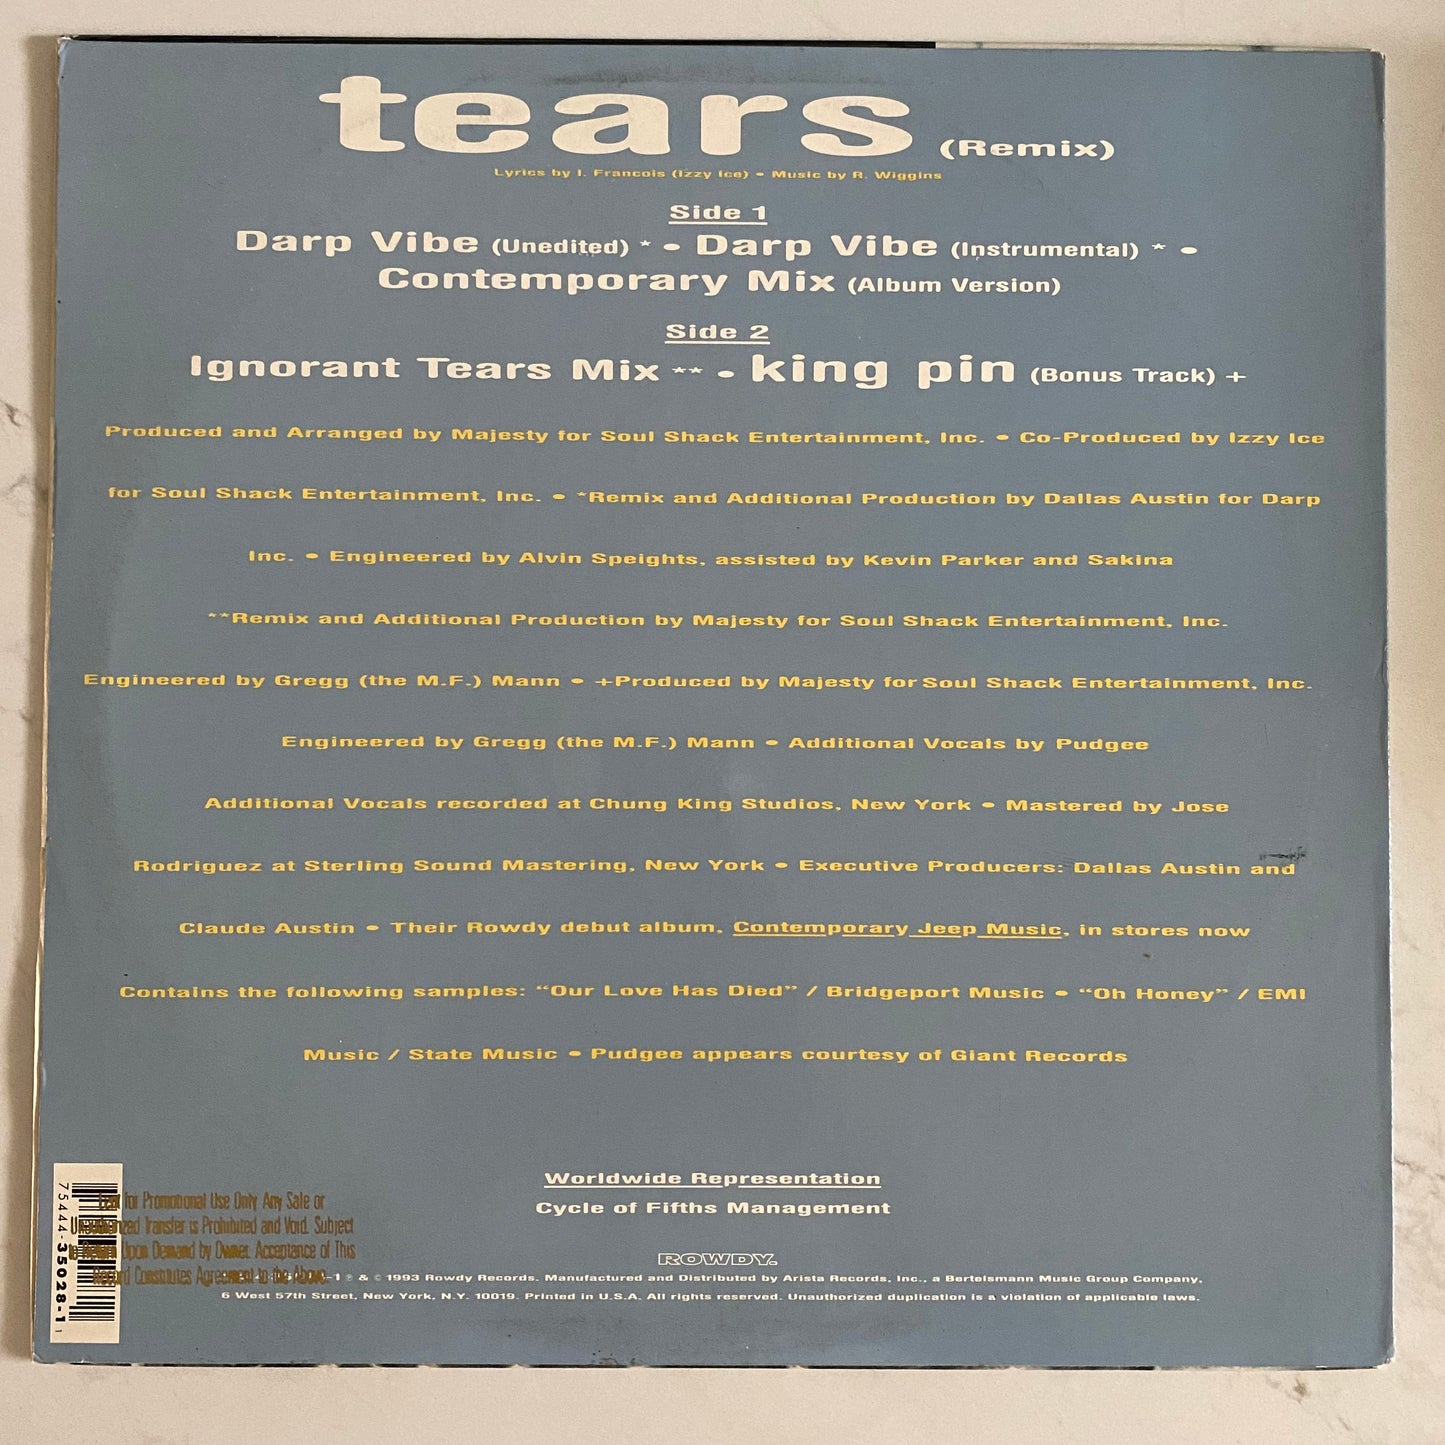 Da King & I - Tears (Remix) (12"). 12" HIP-HOP